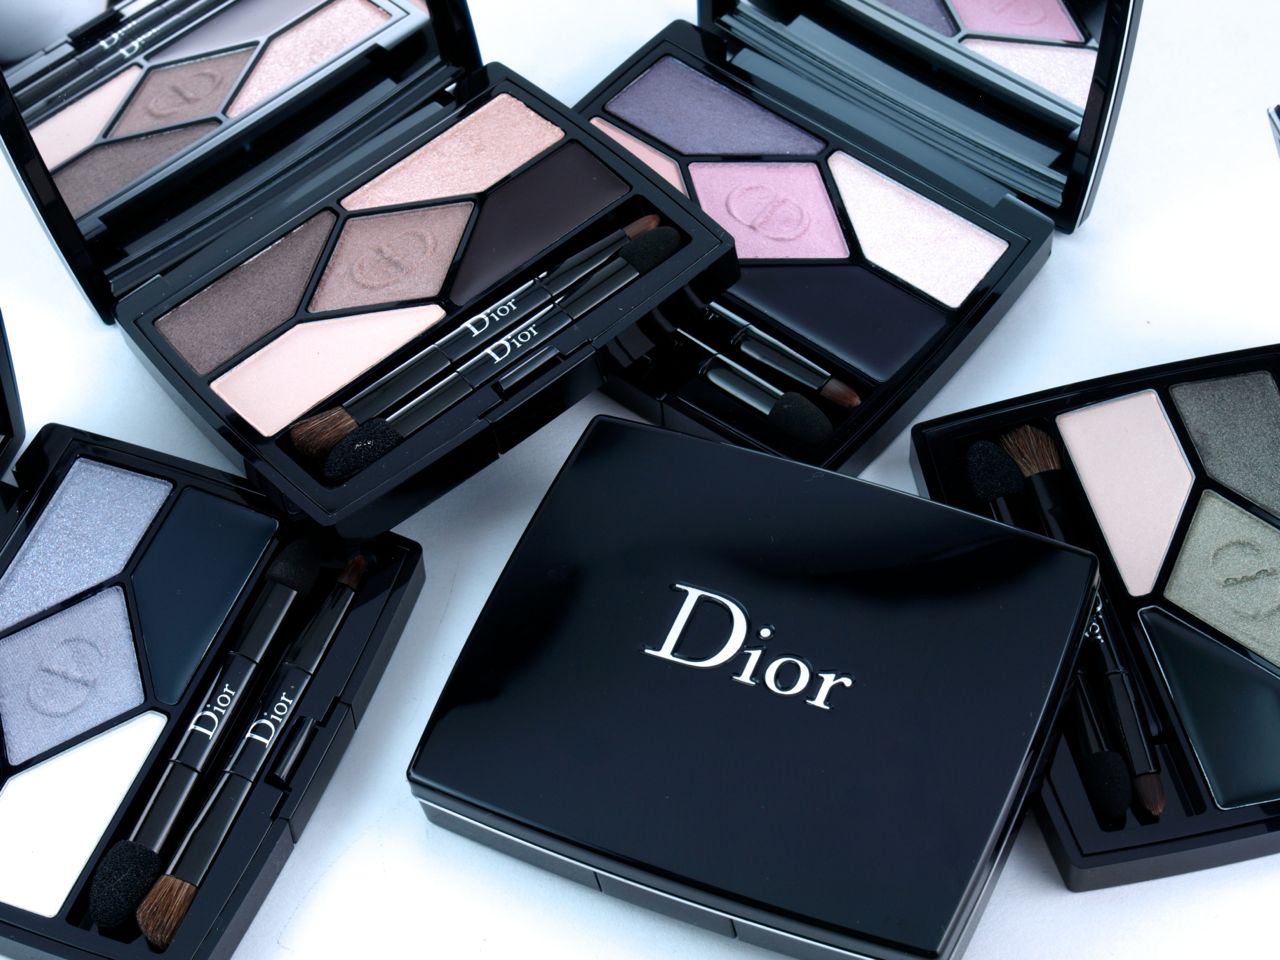 Nova palete de sombras desenhada pela Christian Dior